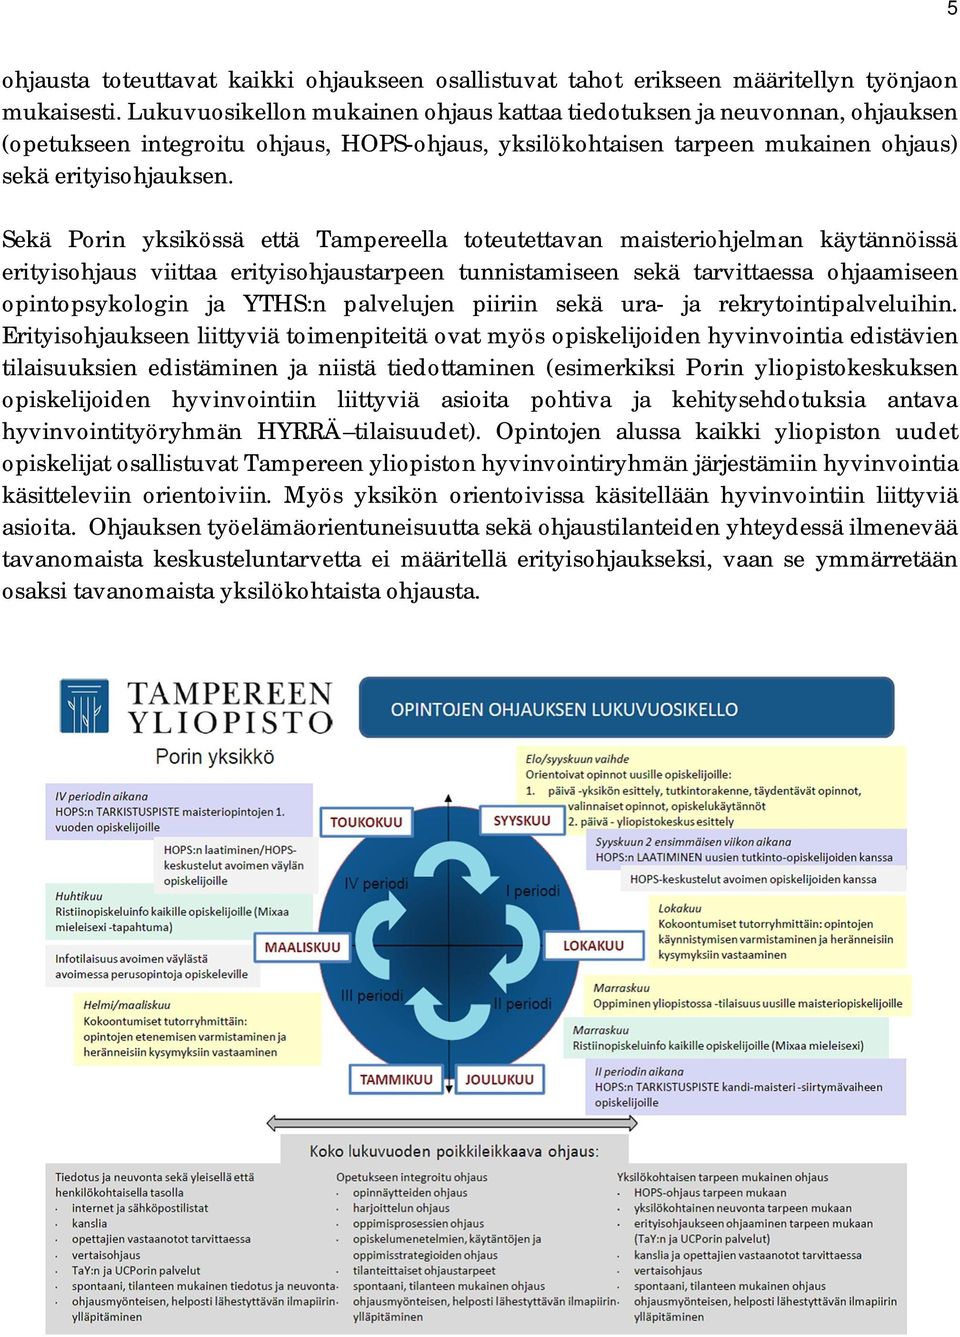 Sekä Porin yksikössä että Tampereella toteutettavan maisteriohjelman käytännöissä erityisohjaus viittaa erityisohjaustarpeen tunnistamiseen sekä tarvittaessa ohjaamiseen opintopsykologin ja YTHS:n